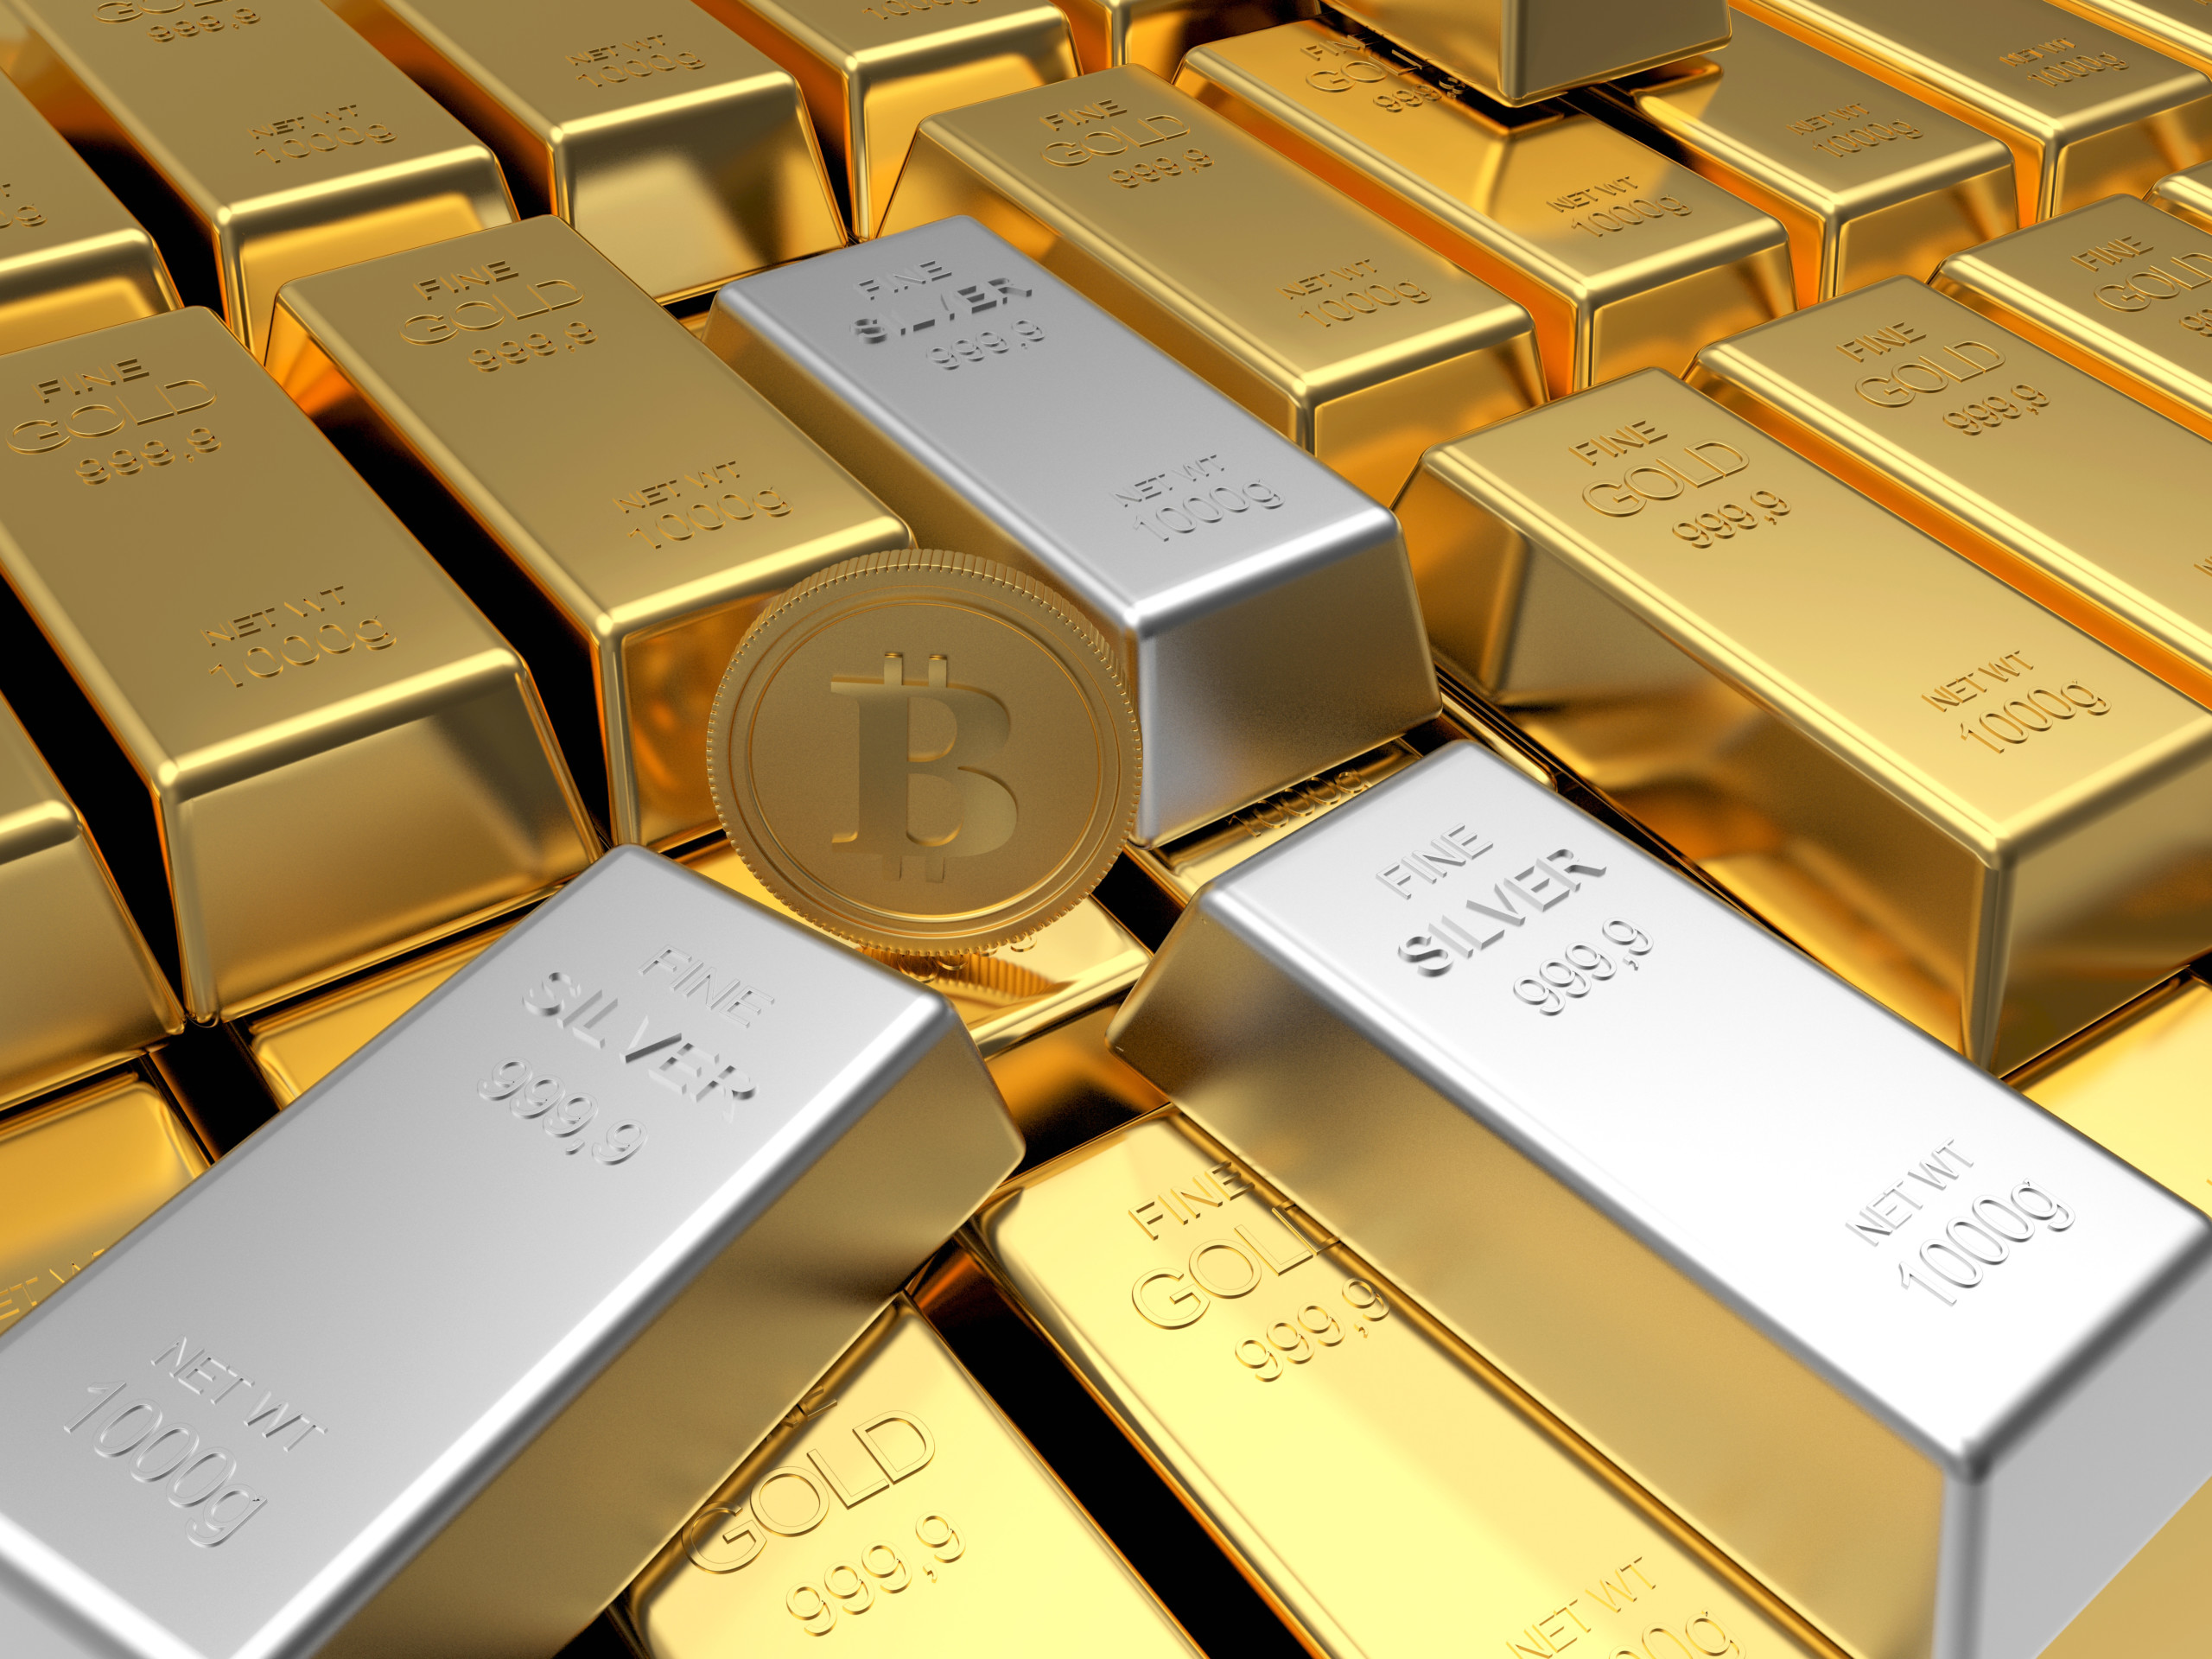 Der Goldpreis markiert neues Allzeithoch - Top 3 Gold-Stock, um den Trend zu spielen!